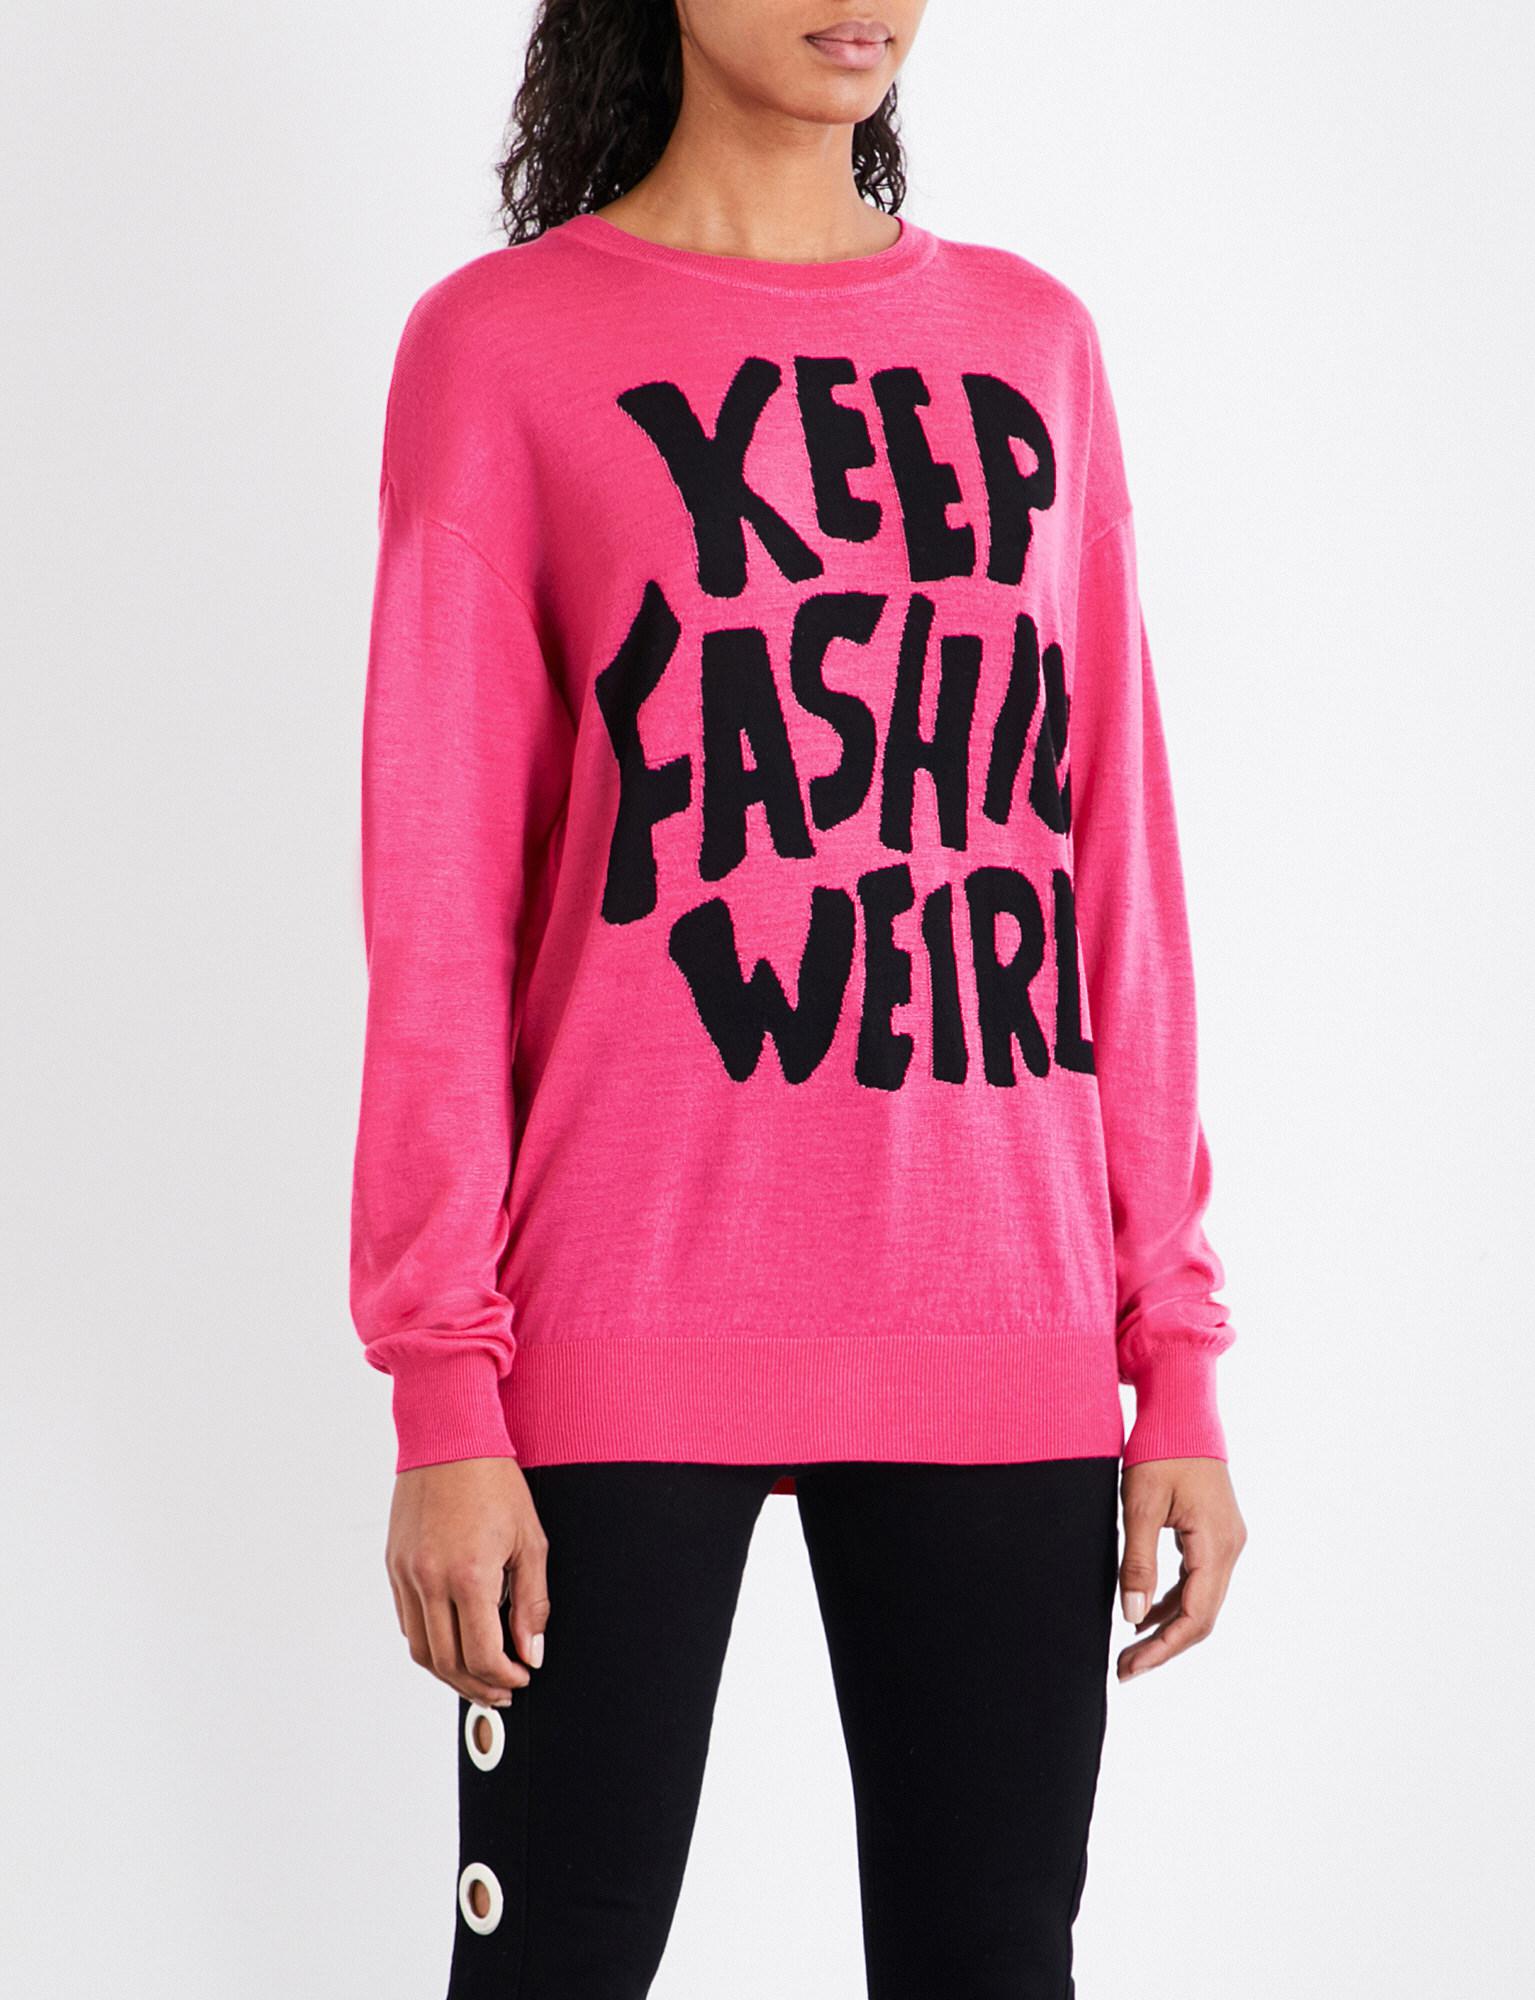 Jeremy Scott Keep Fashion Weird Wool Jumper in Pink | Lyst